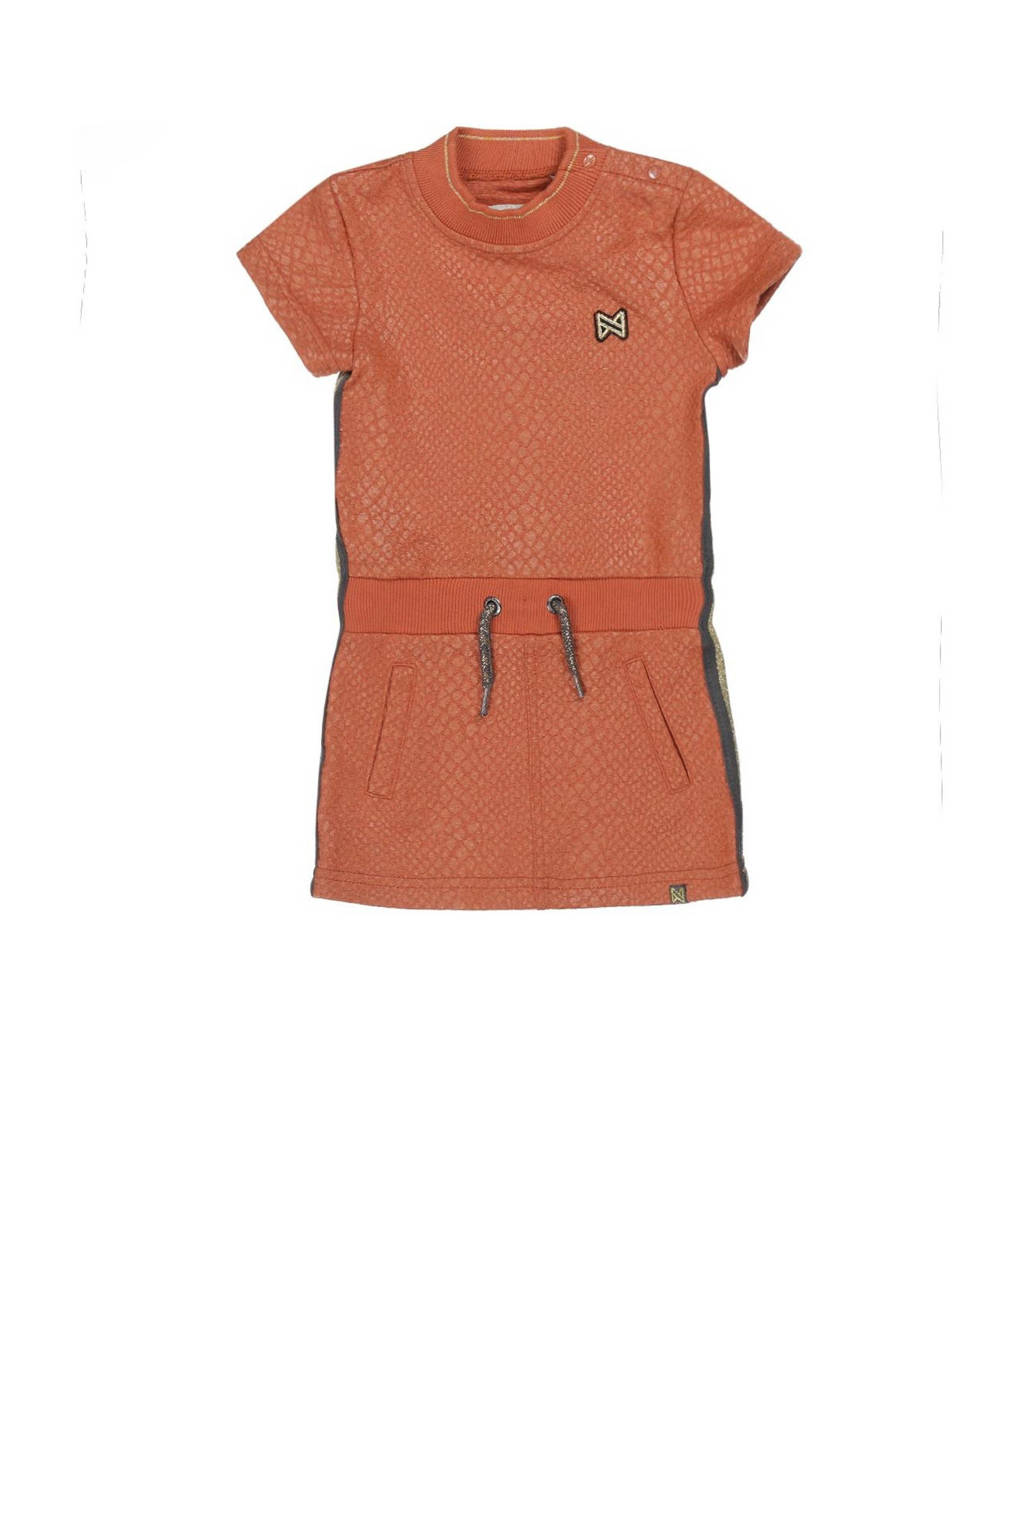 Oranje meisjes Koko Noko jurk van polyester met slangenprint, korte mouwen, ronde hals en geribde boorden